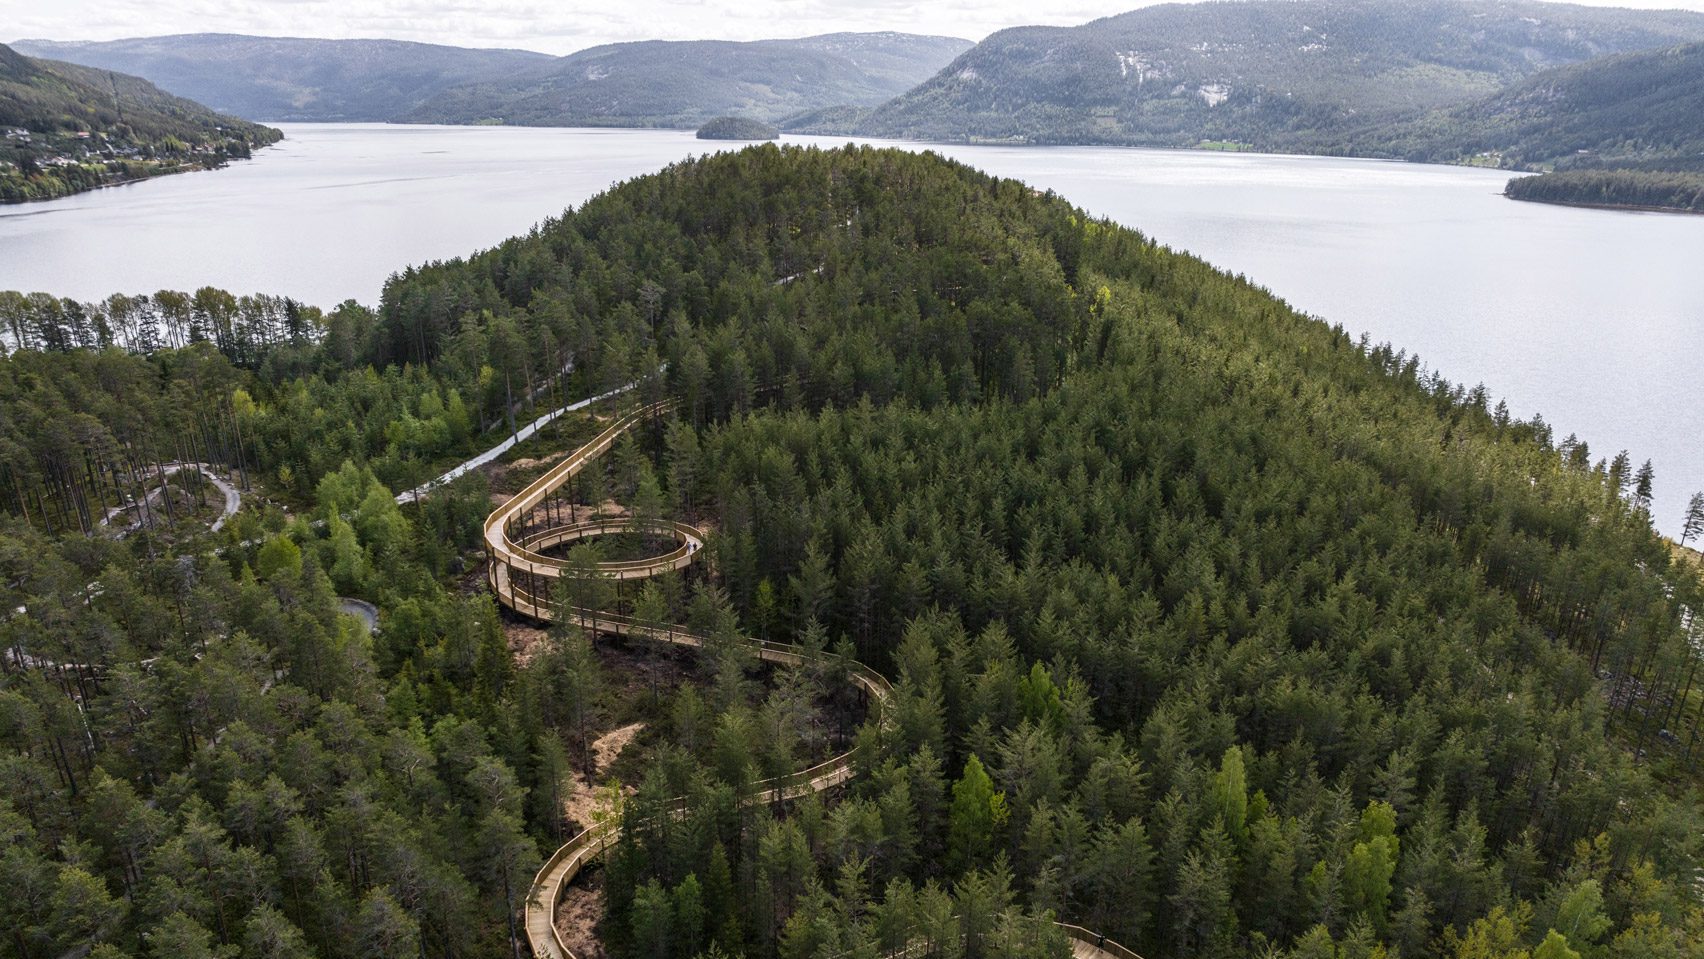 Denne uken avduket vi en tretoppgangvei i Norge